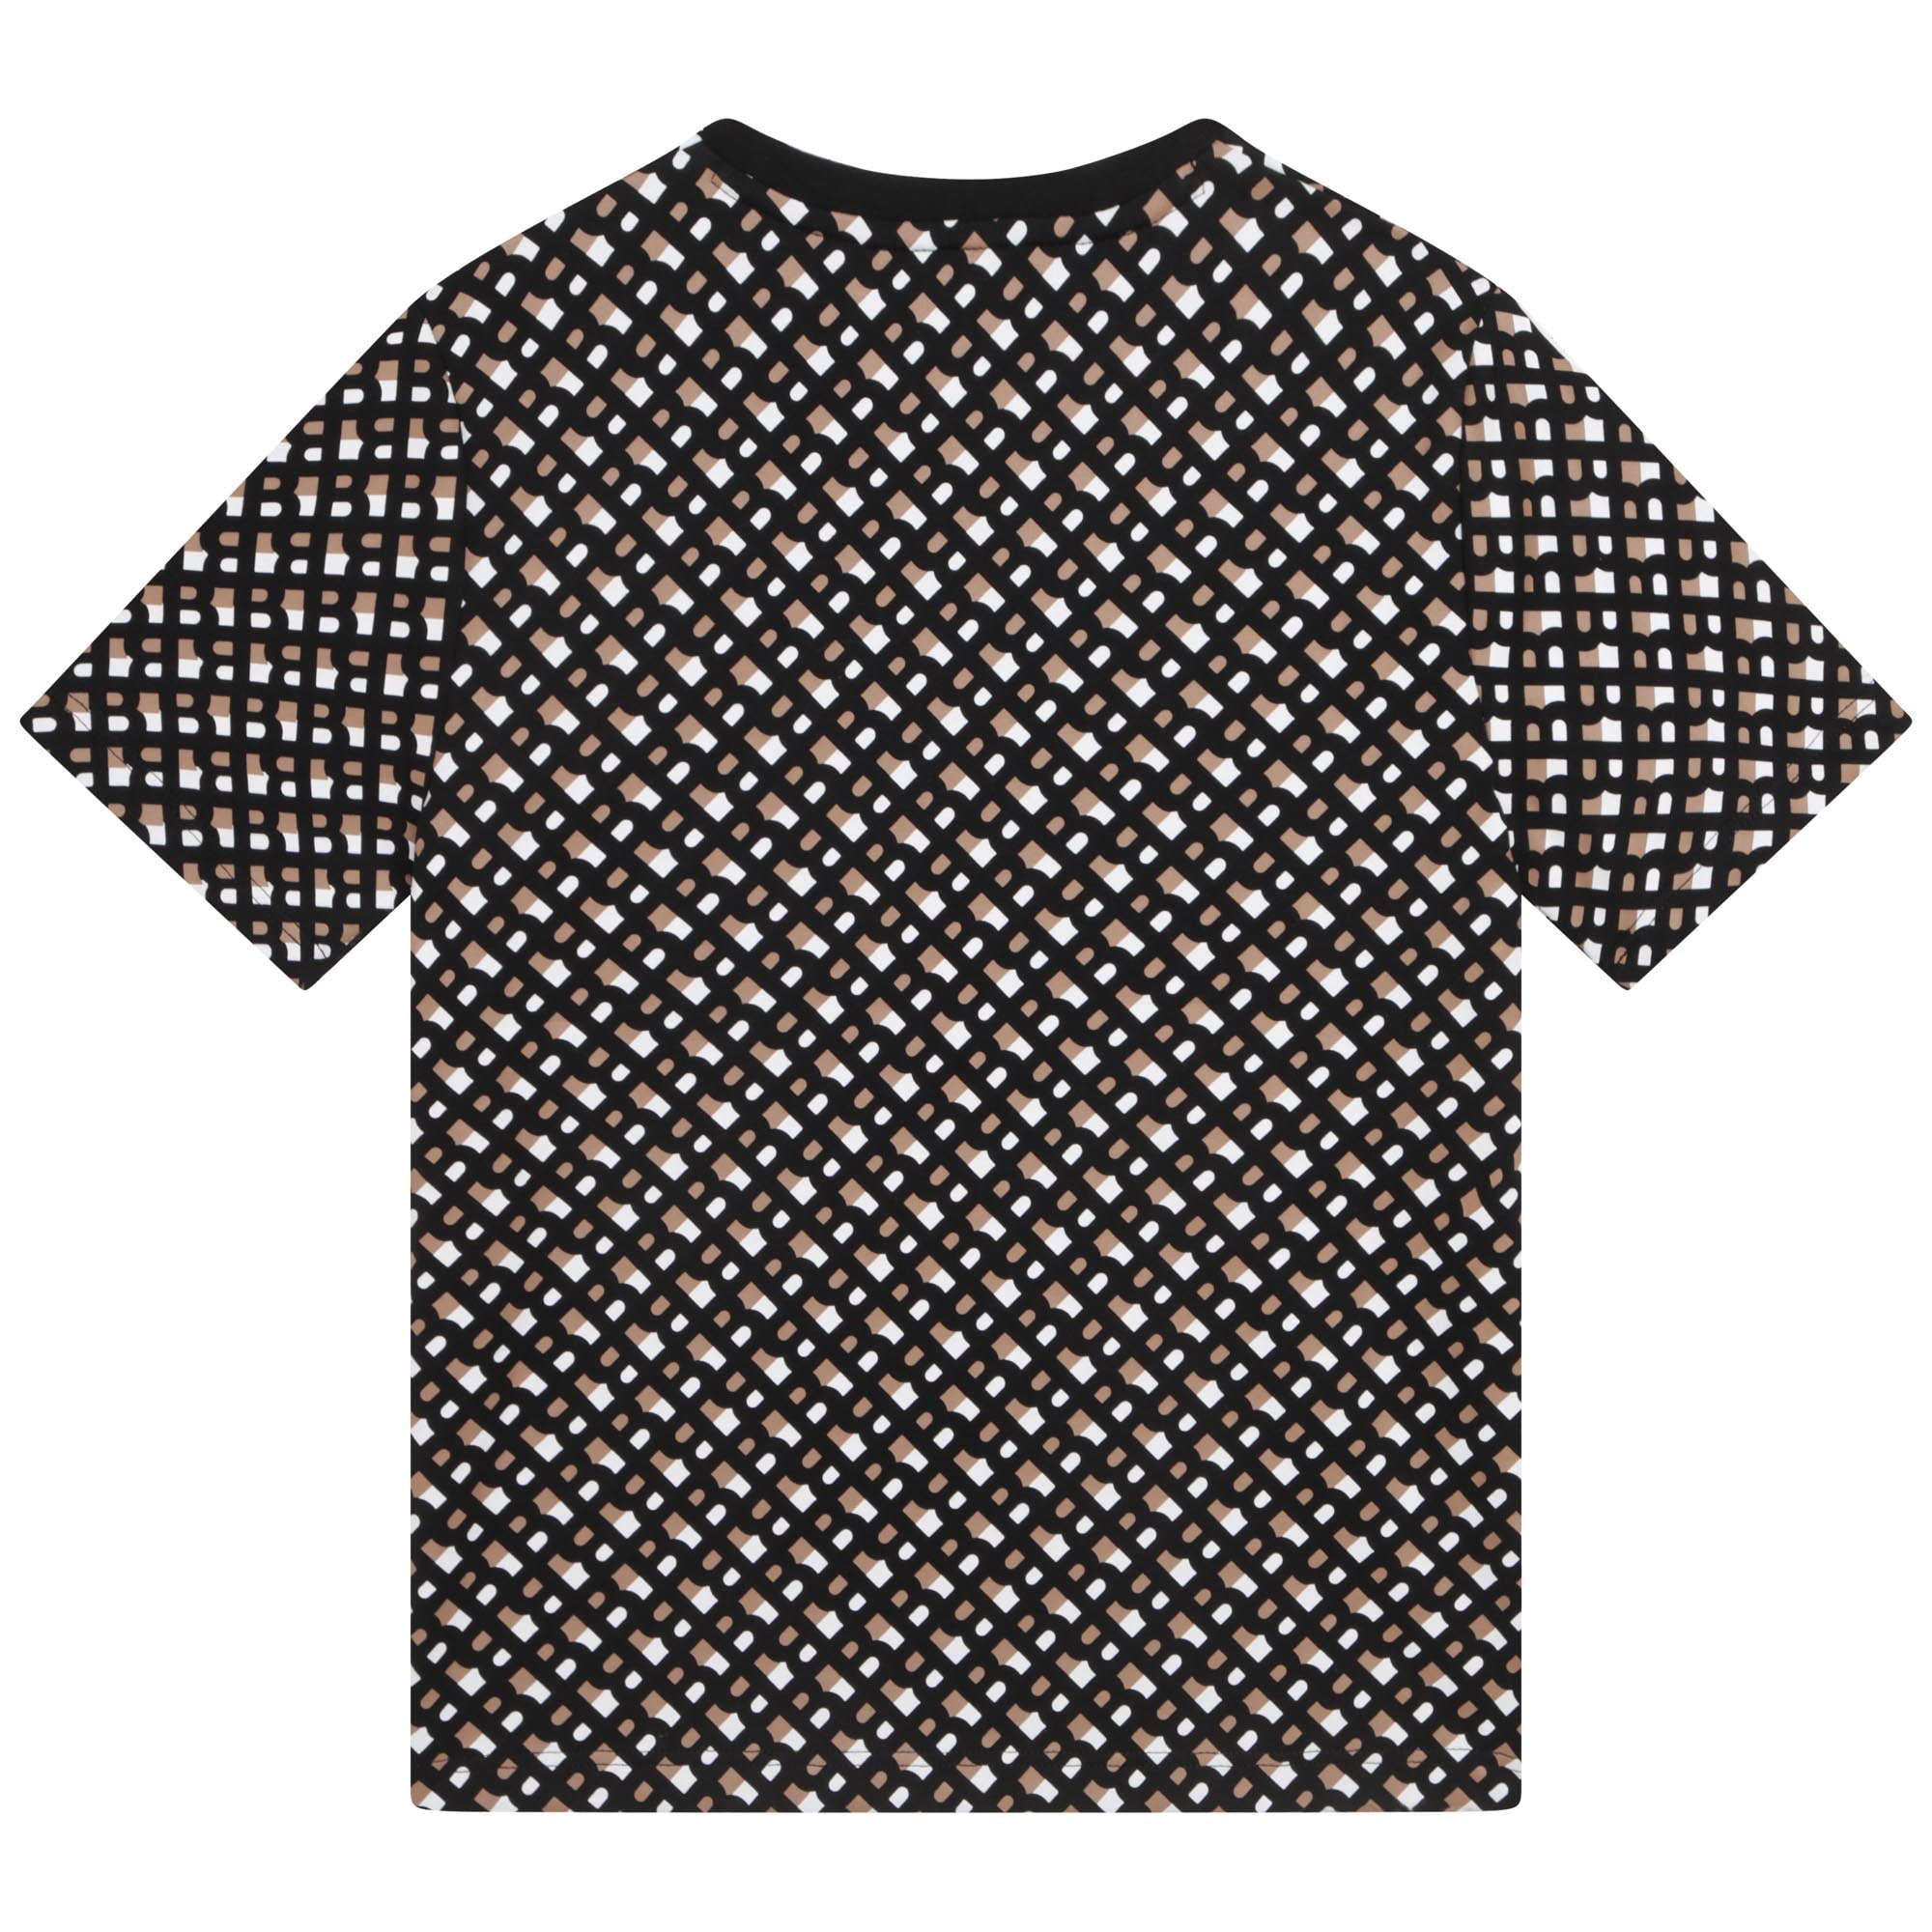 Short Sleeves Tee-Shirt - Black/Brown